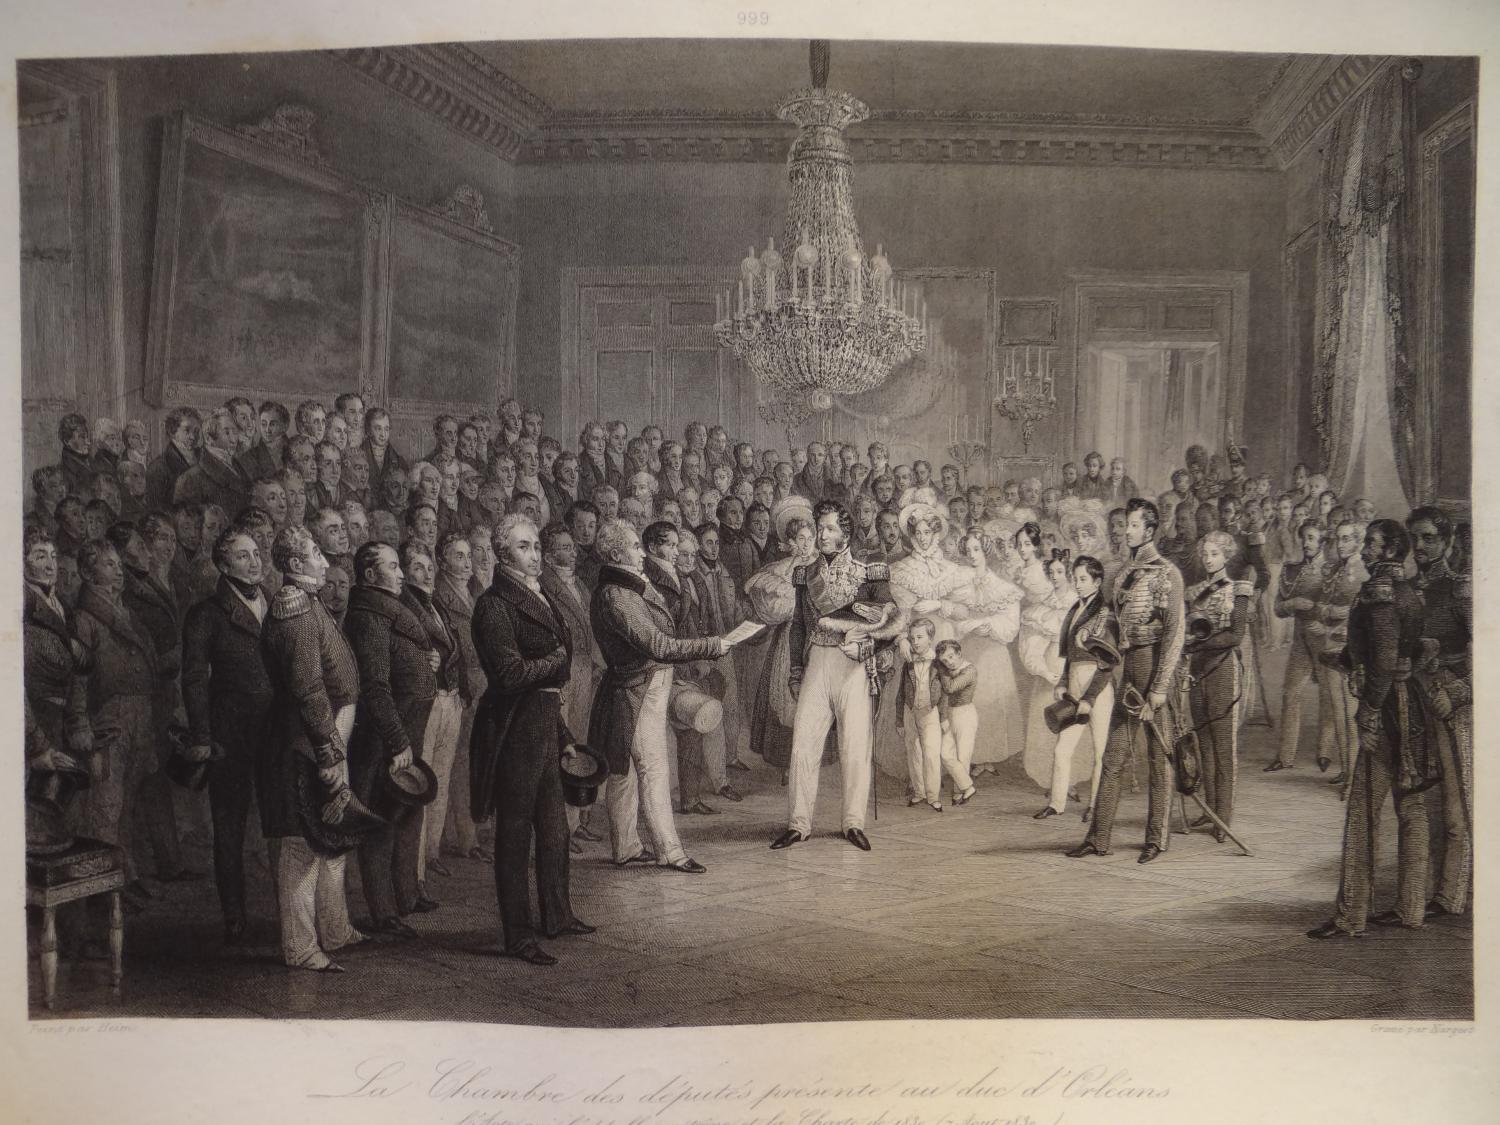 Gravure de Jean-Denis Nargeot d'après François-Joseph Heim - " La Chambre des députés présente au duc d'Orléans l'Acte qui l'appelle au trône et la Charte de 1830 (7 août 1830) "